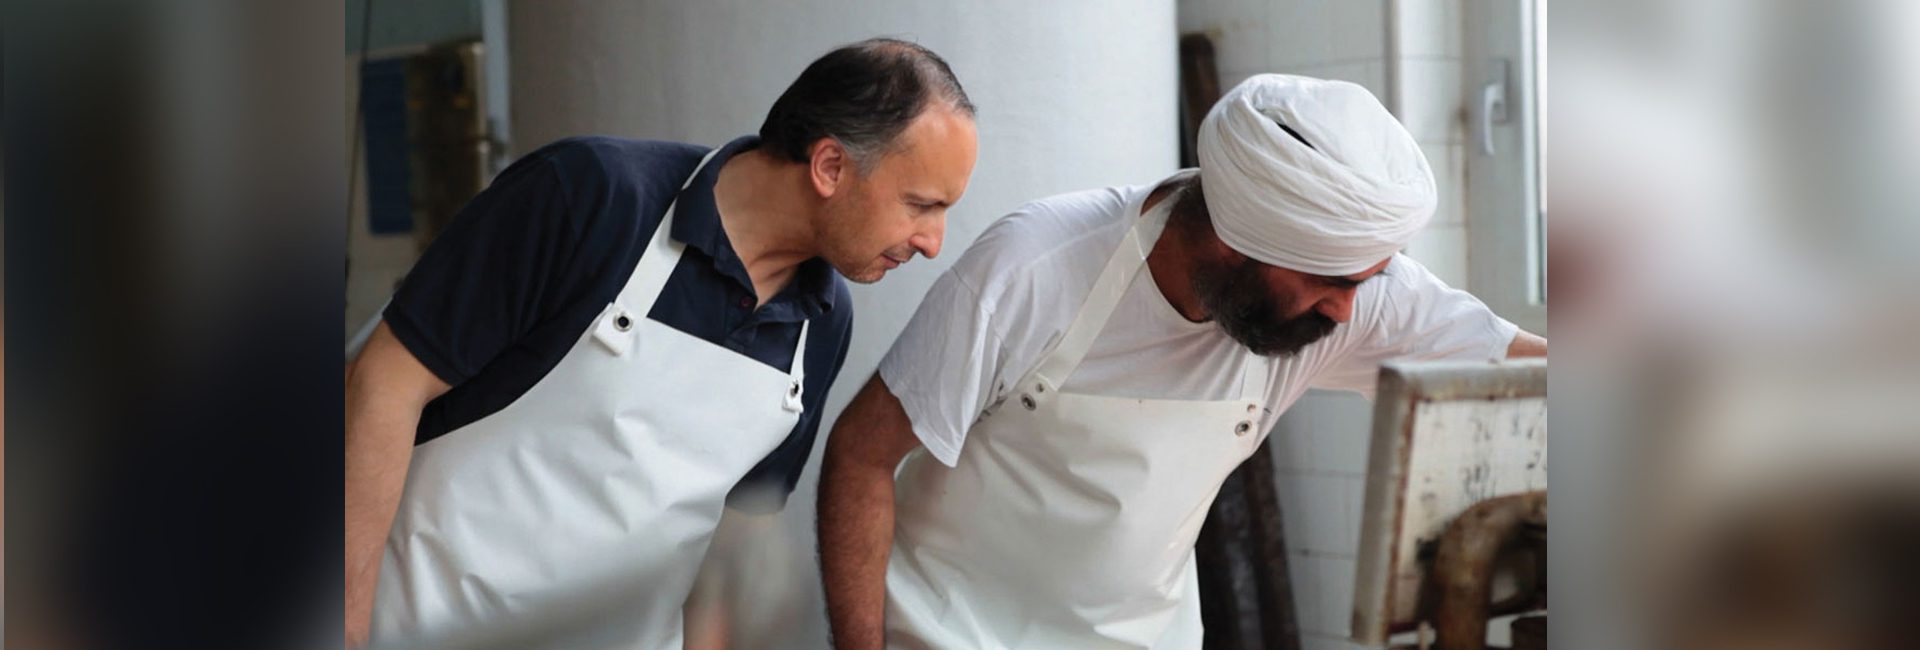 Conexão indiana do parmesão: como os sikhs salvaram a indústria italiana de queijos